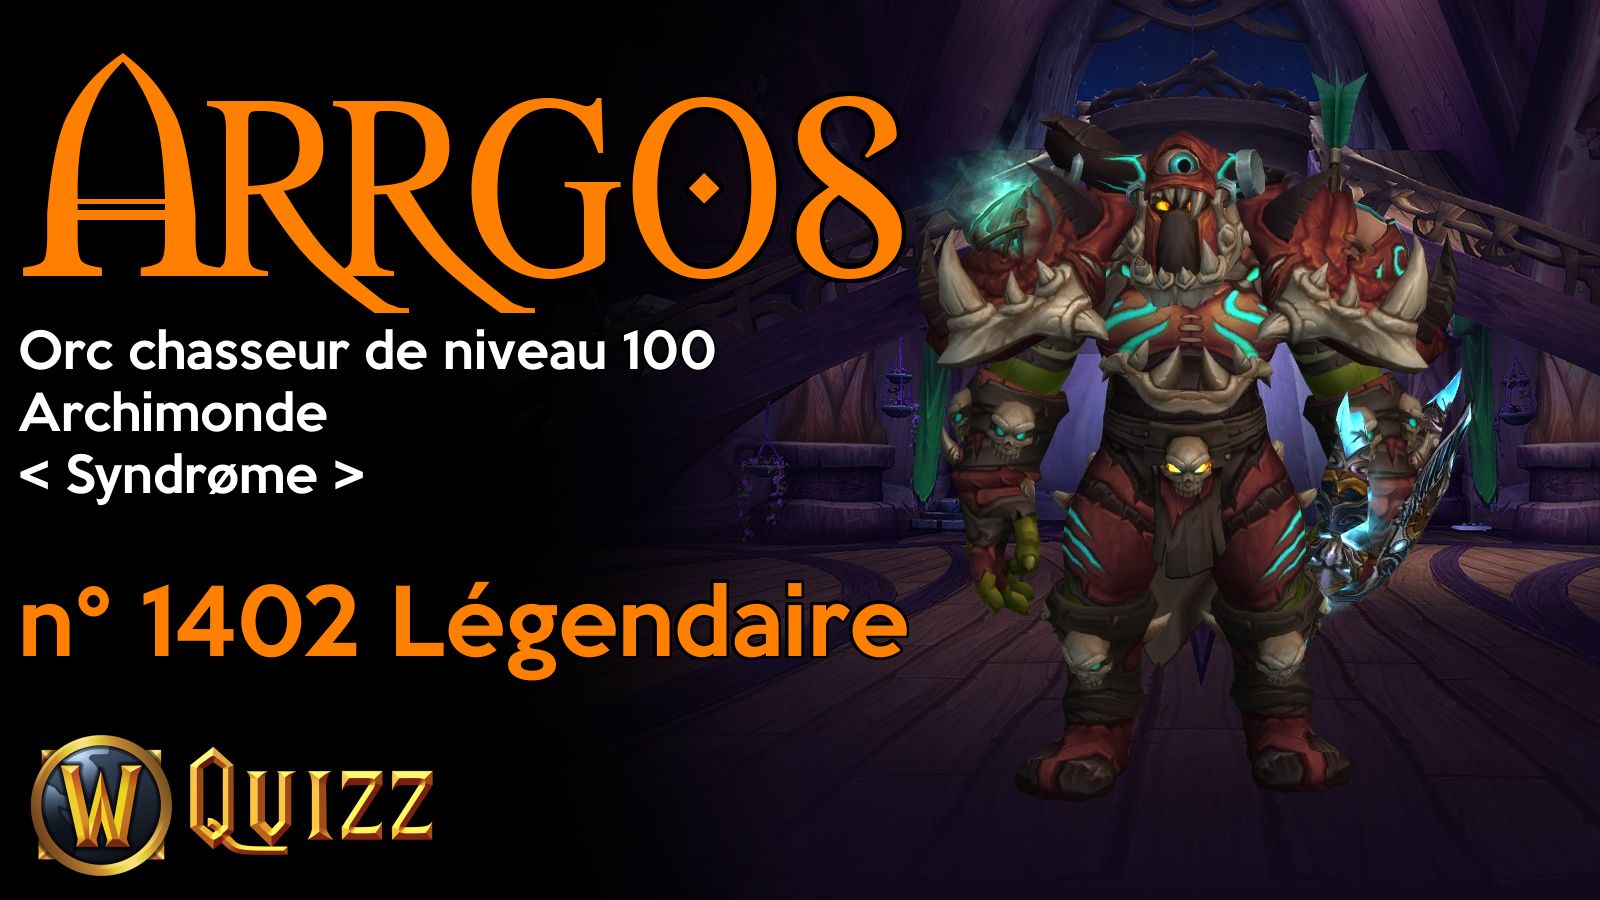 Arrgos, Orc chasseur de niveau 100, Archimonde